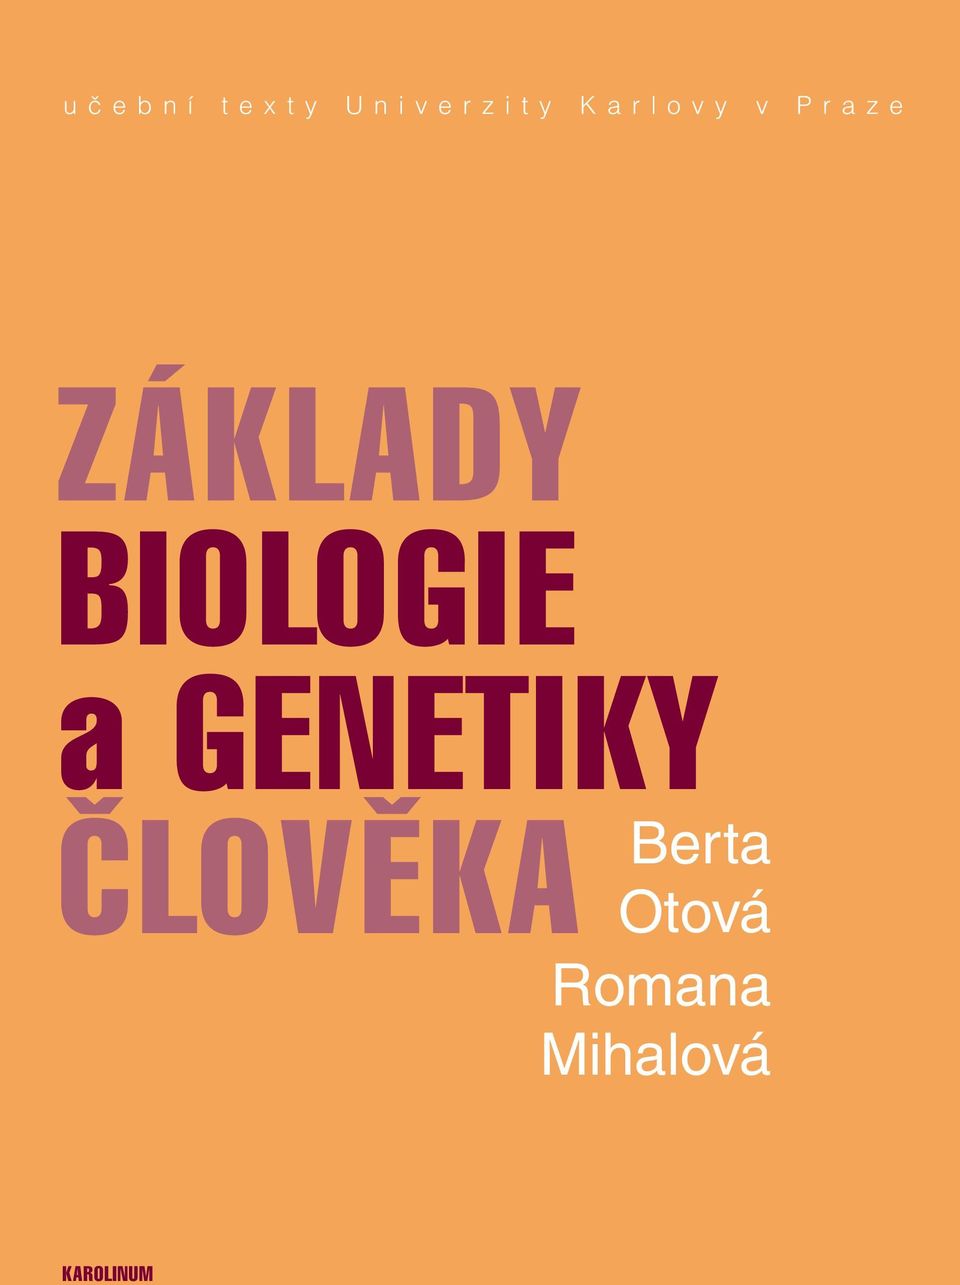 BIOLOGIE a GENETIKY ČLOVĚKA